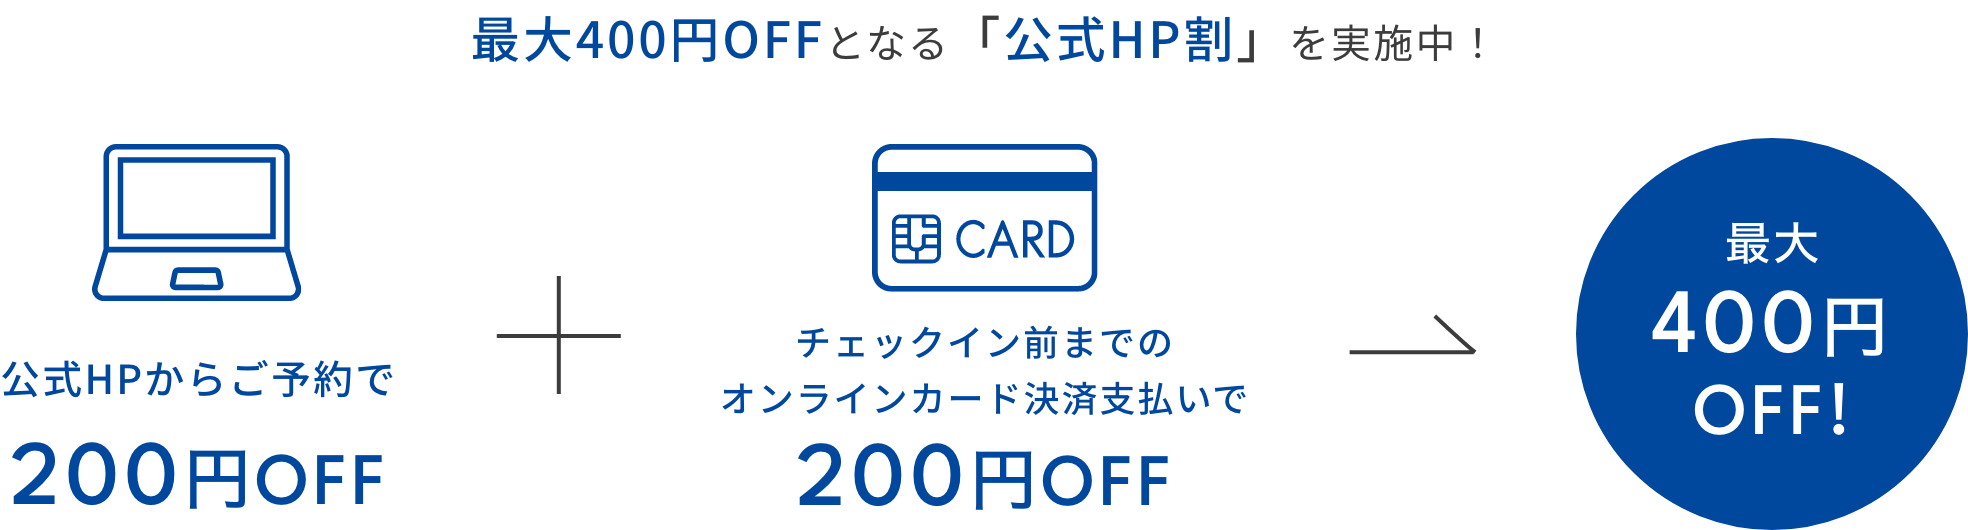 最大400円OFFとなる「公式HP割」を実施中！公式HPからご予約で200円OFF+チェックイン前までのオンラインカード決済支払いで200円OFF→最大400円OFF!